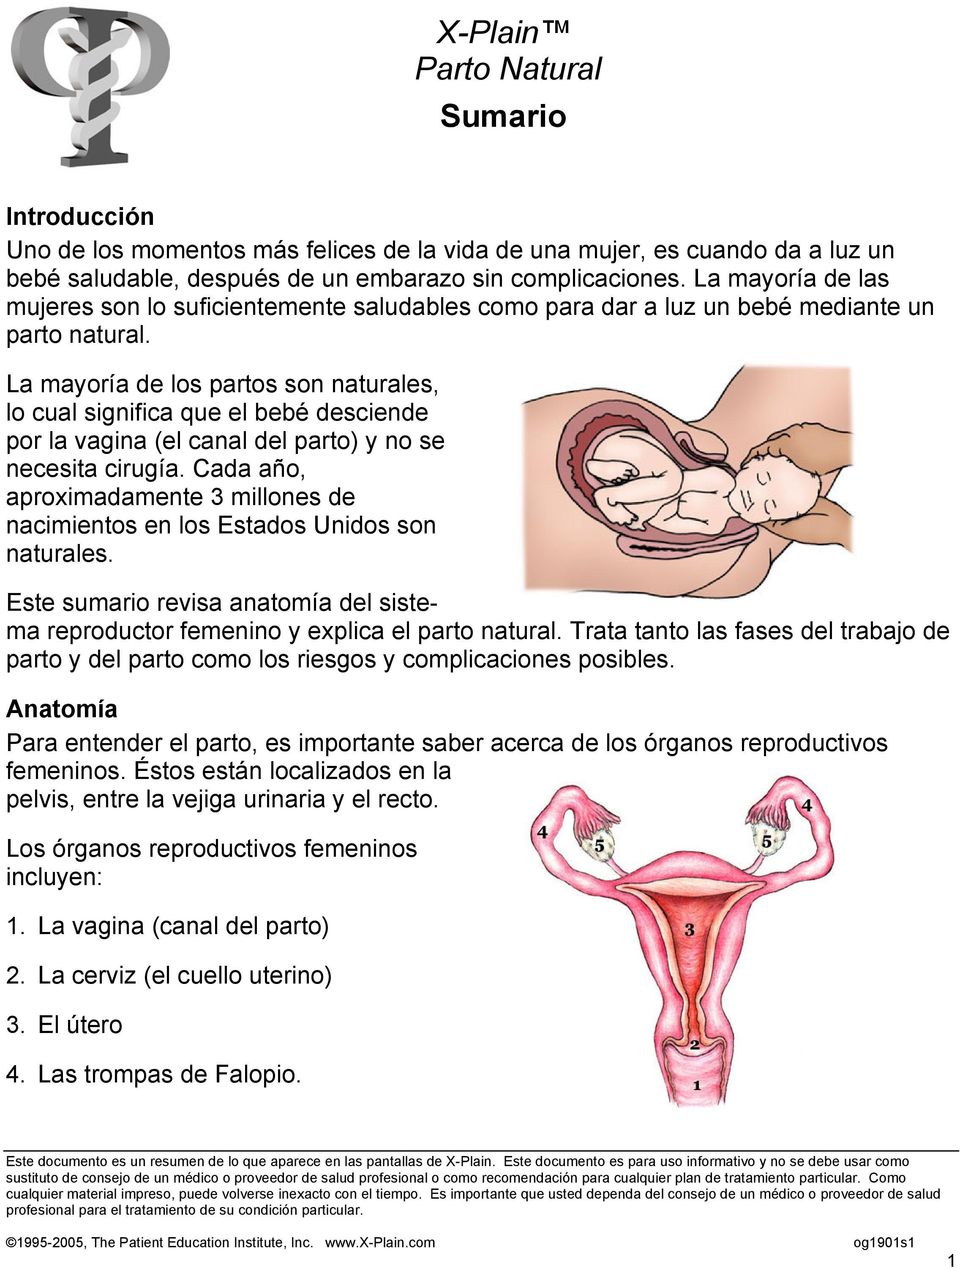 La mayoría de los partos son naturales, lo cual significa que el bebé desciende por la vagina (el canal del parto) y no se necesita cirugía.